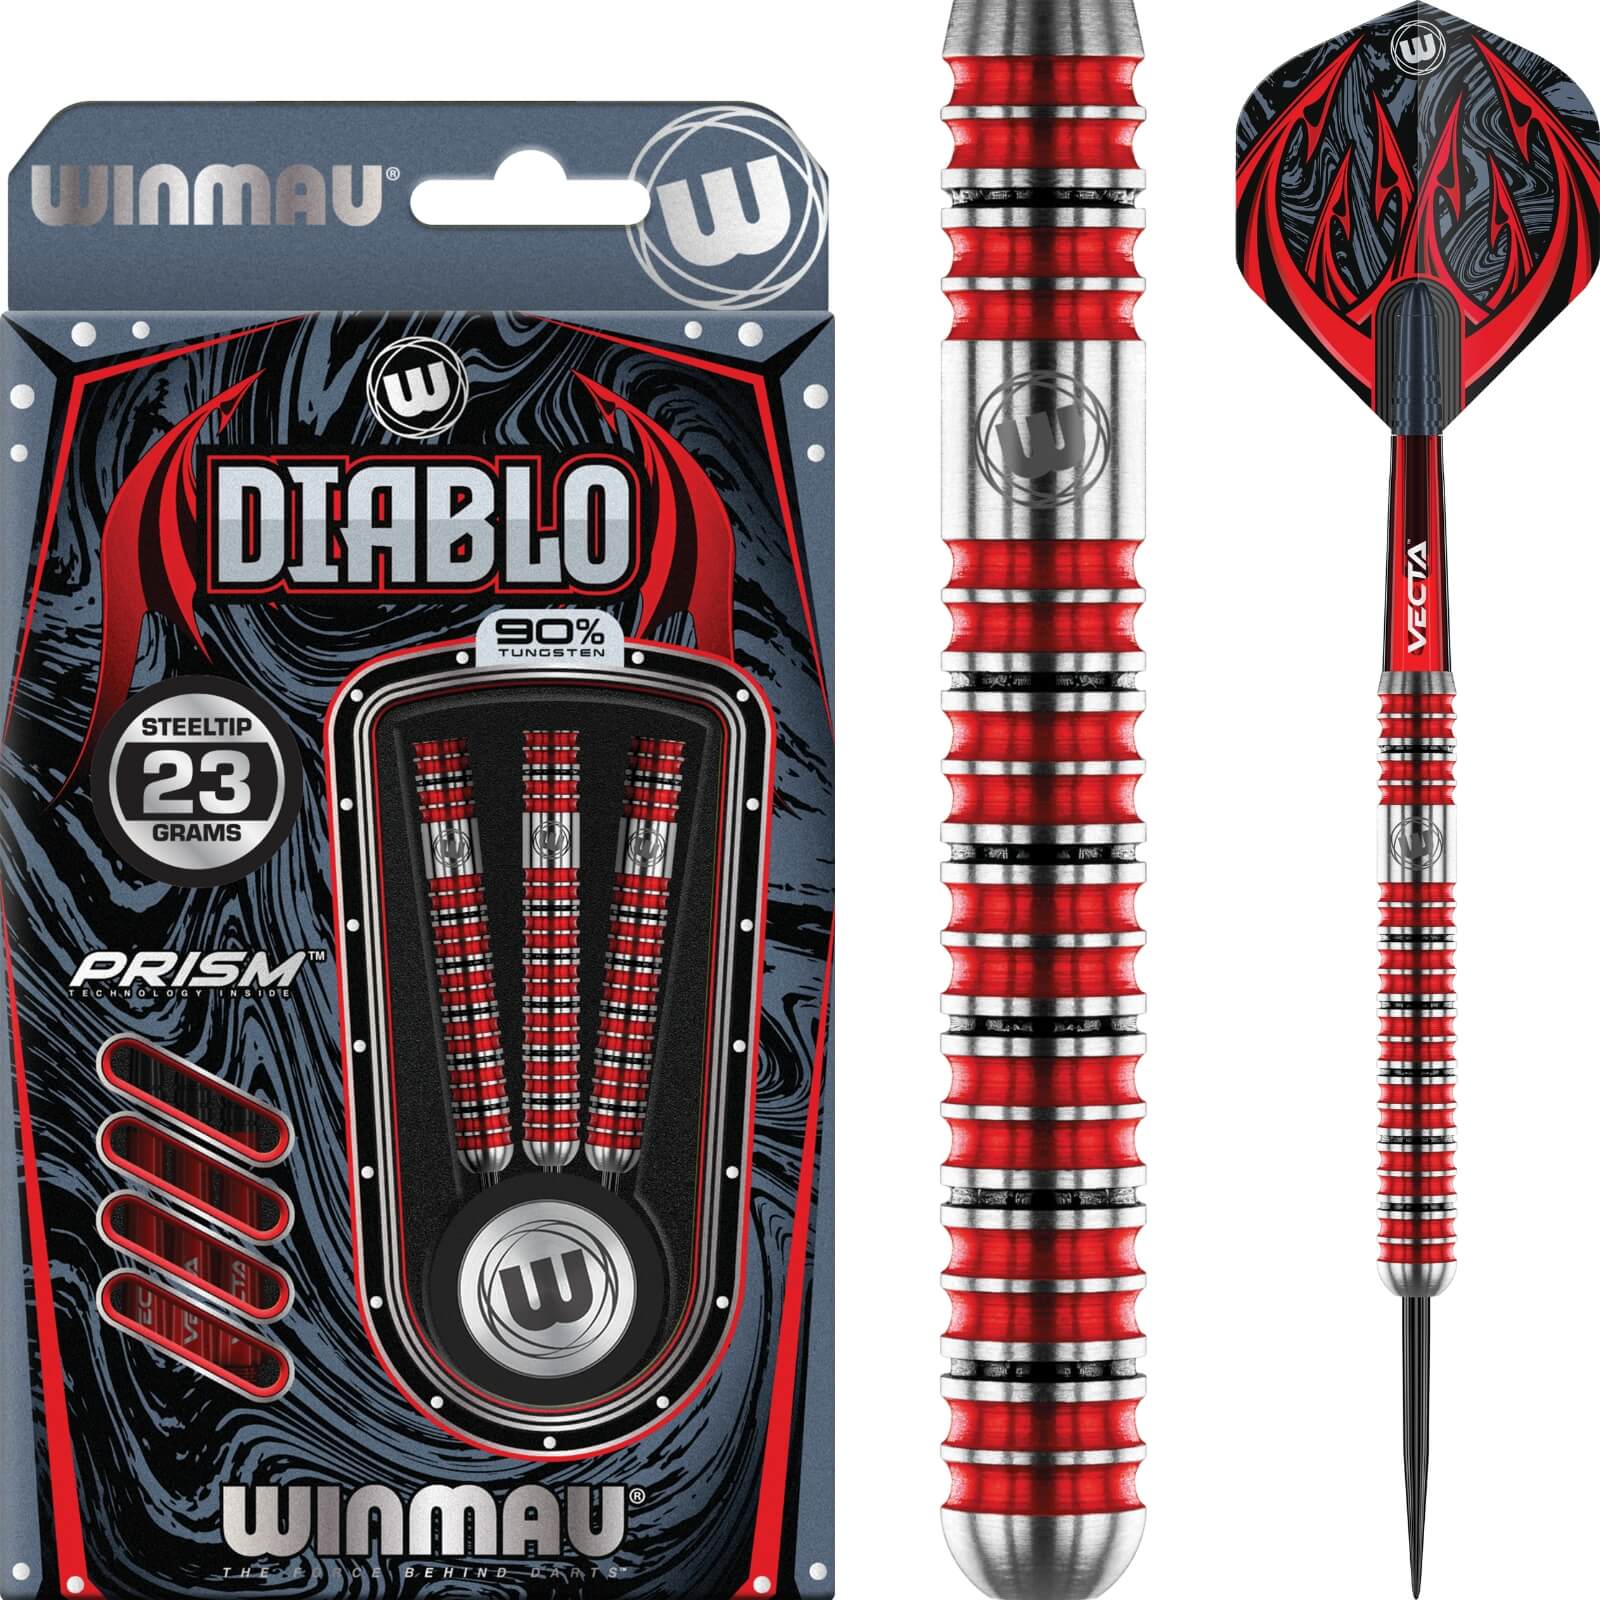 Darts - Winmau - Diablo Darts - Steel Tip - 90% Tungsten - 22g 23g 24g 25g 